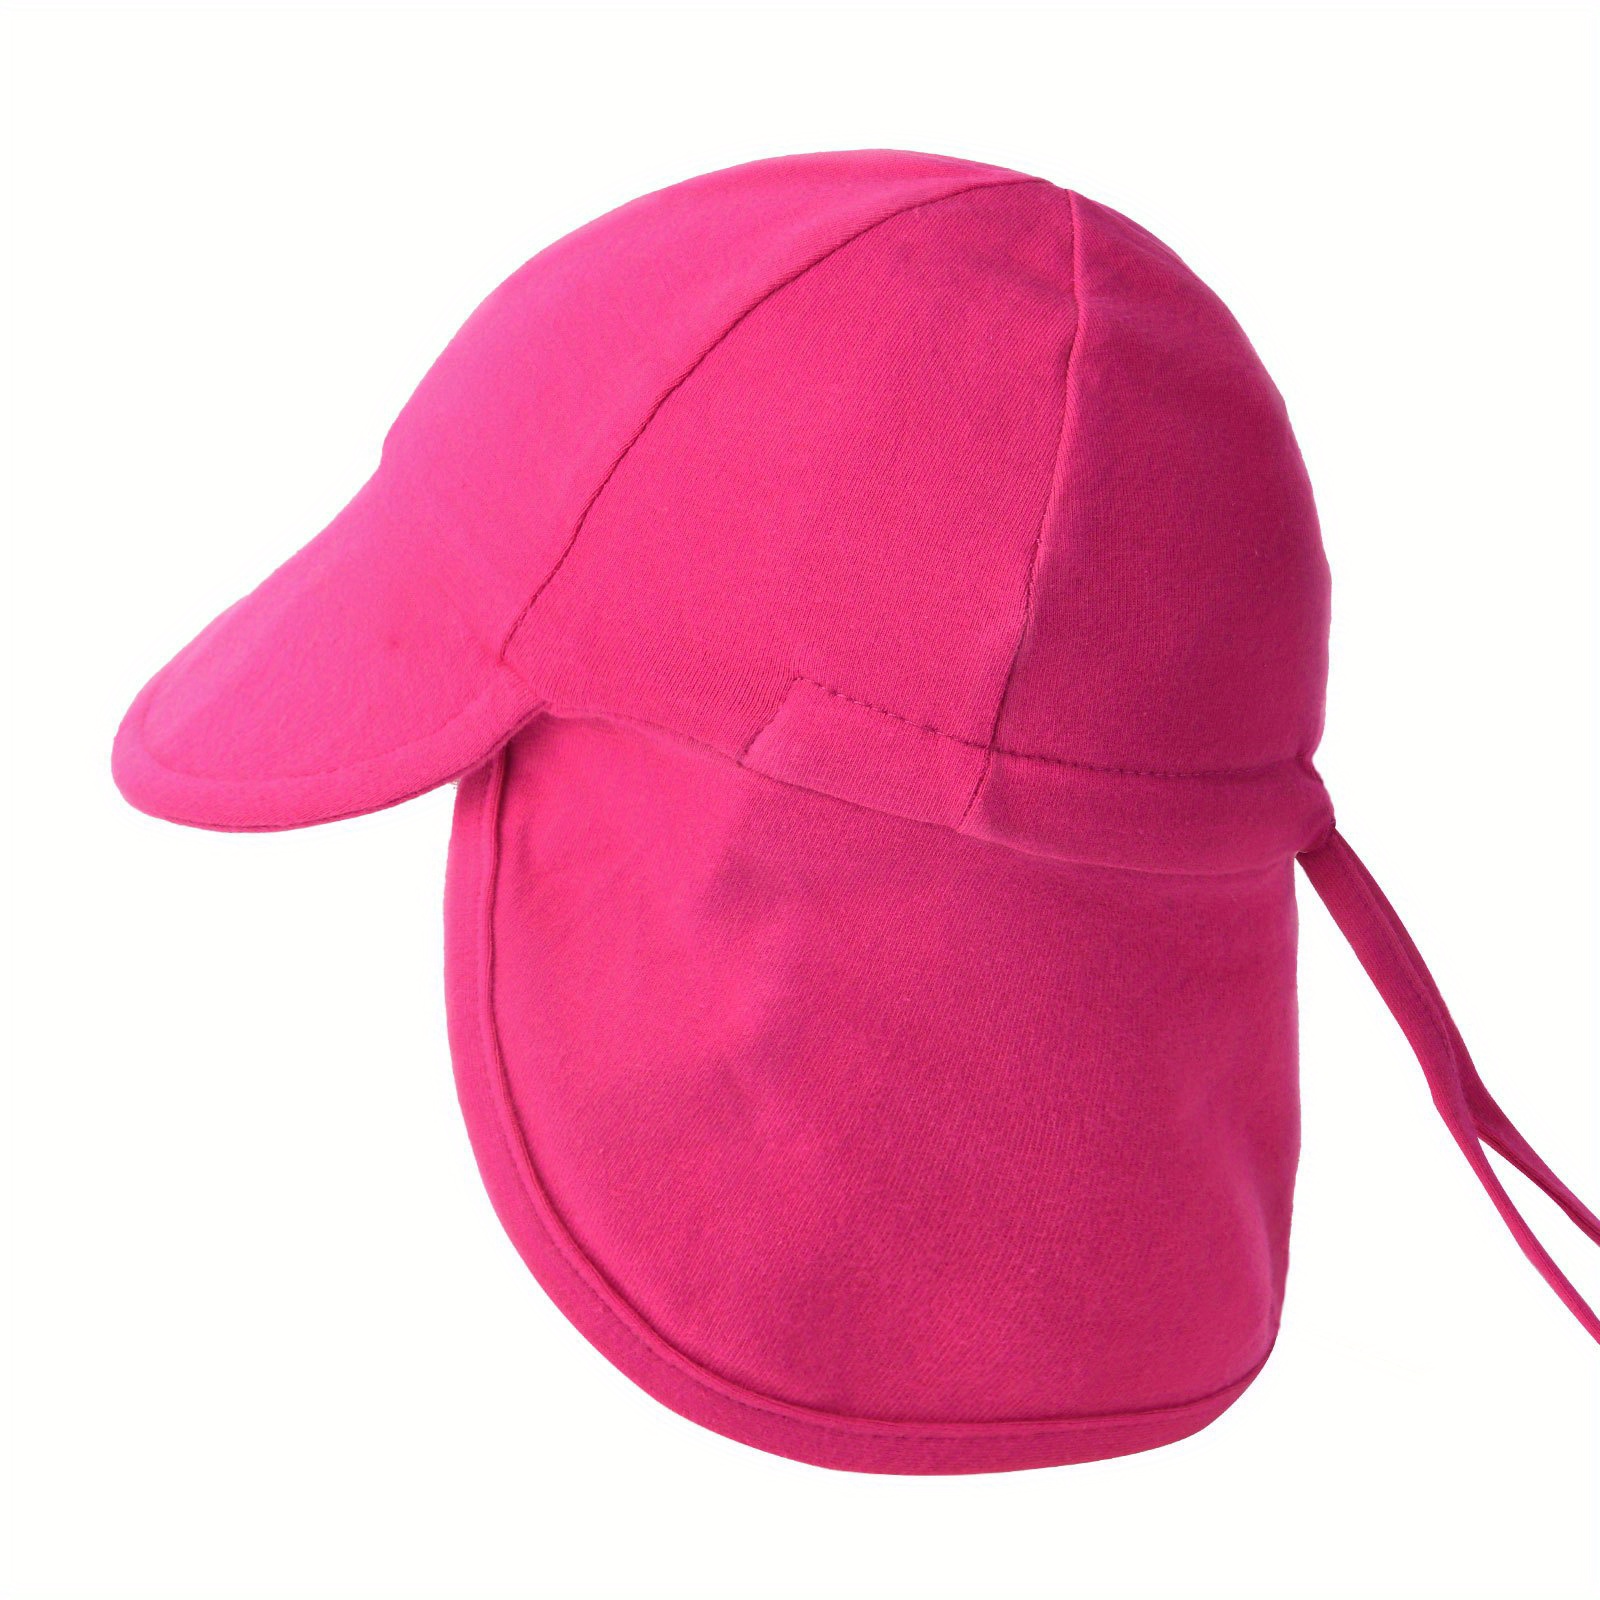 Sombrero para bebés #sombrero #gorro #bebe #gorras #protegido #sol #V